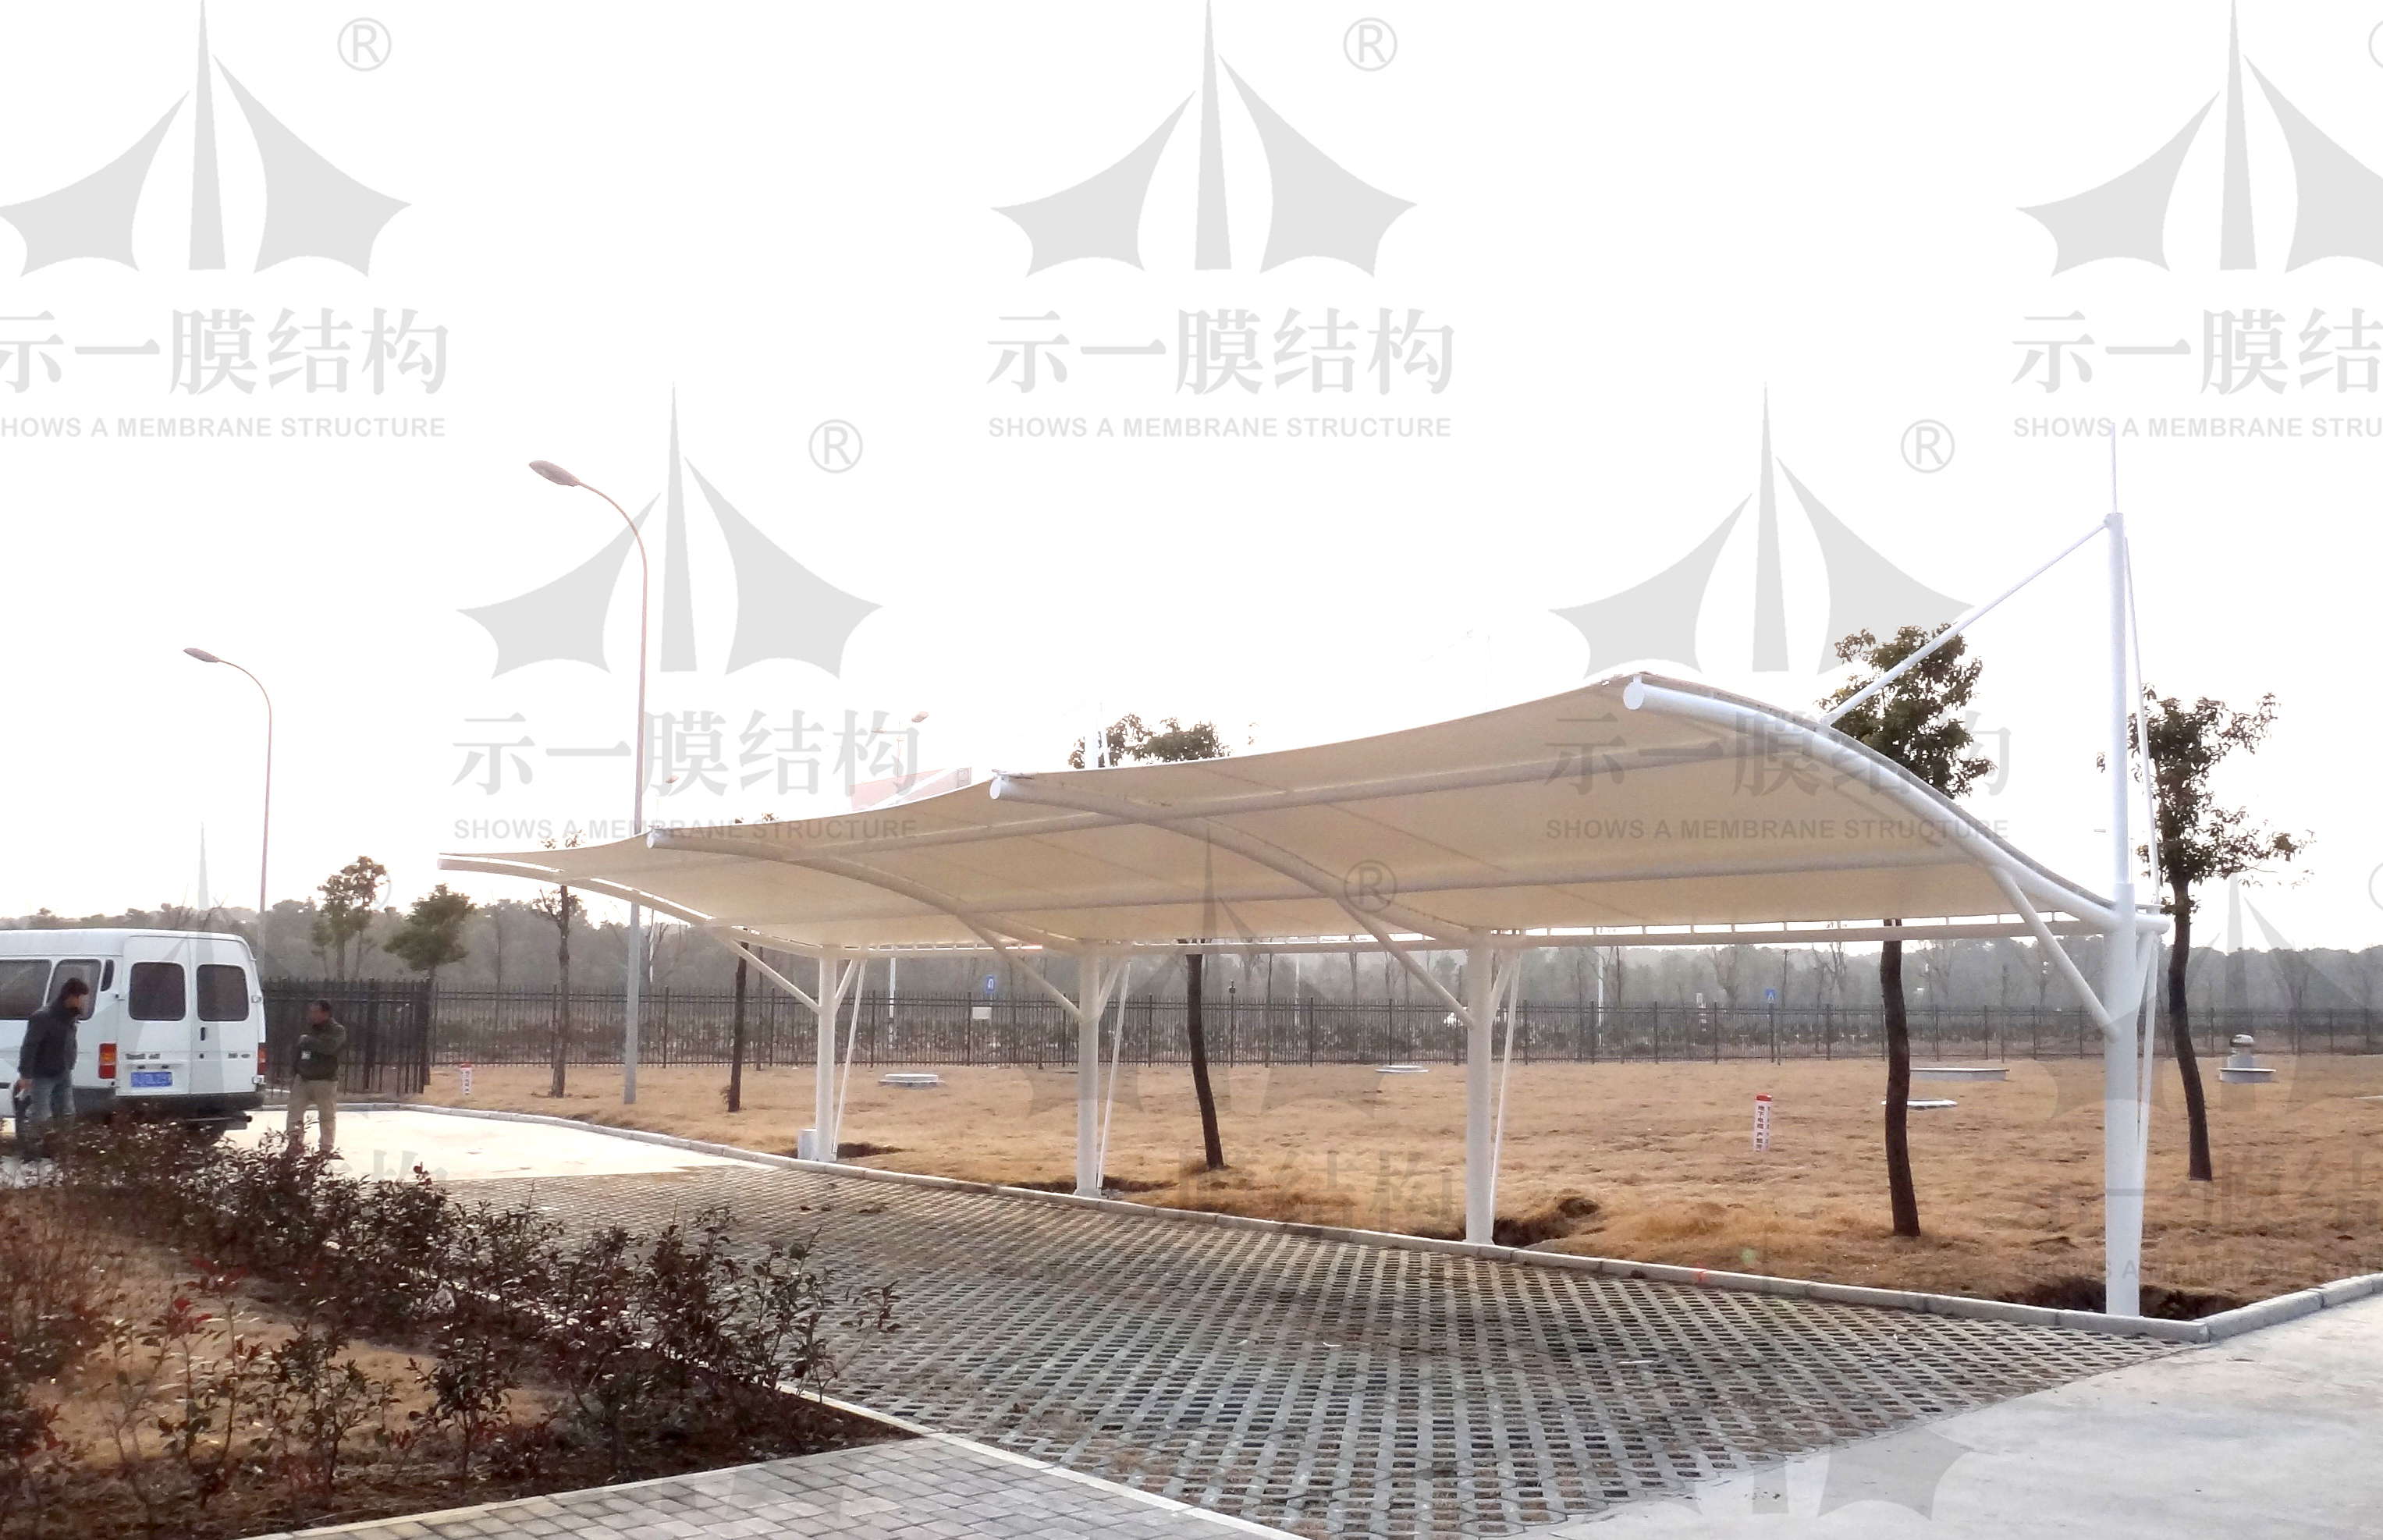 上海示一膜结构有限公司无锡致优无纺布公司膜结构车棚